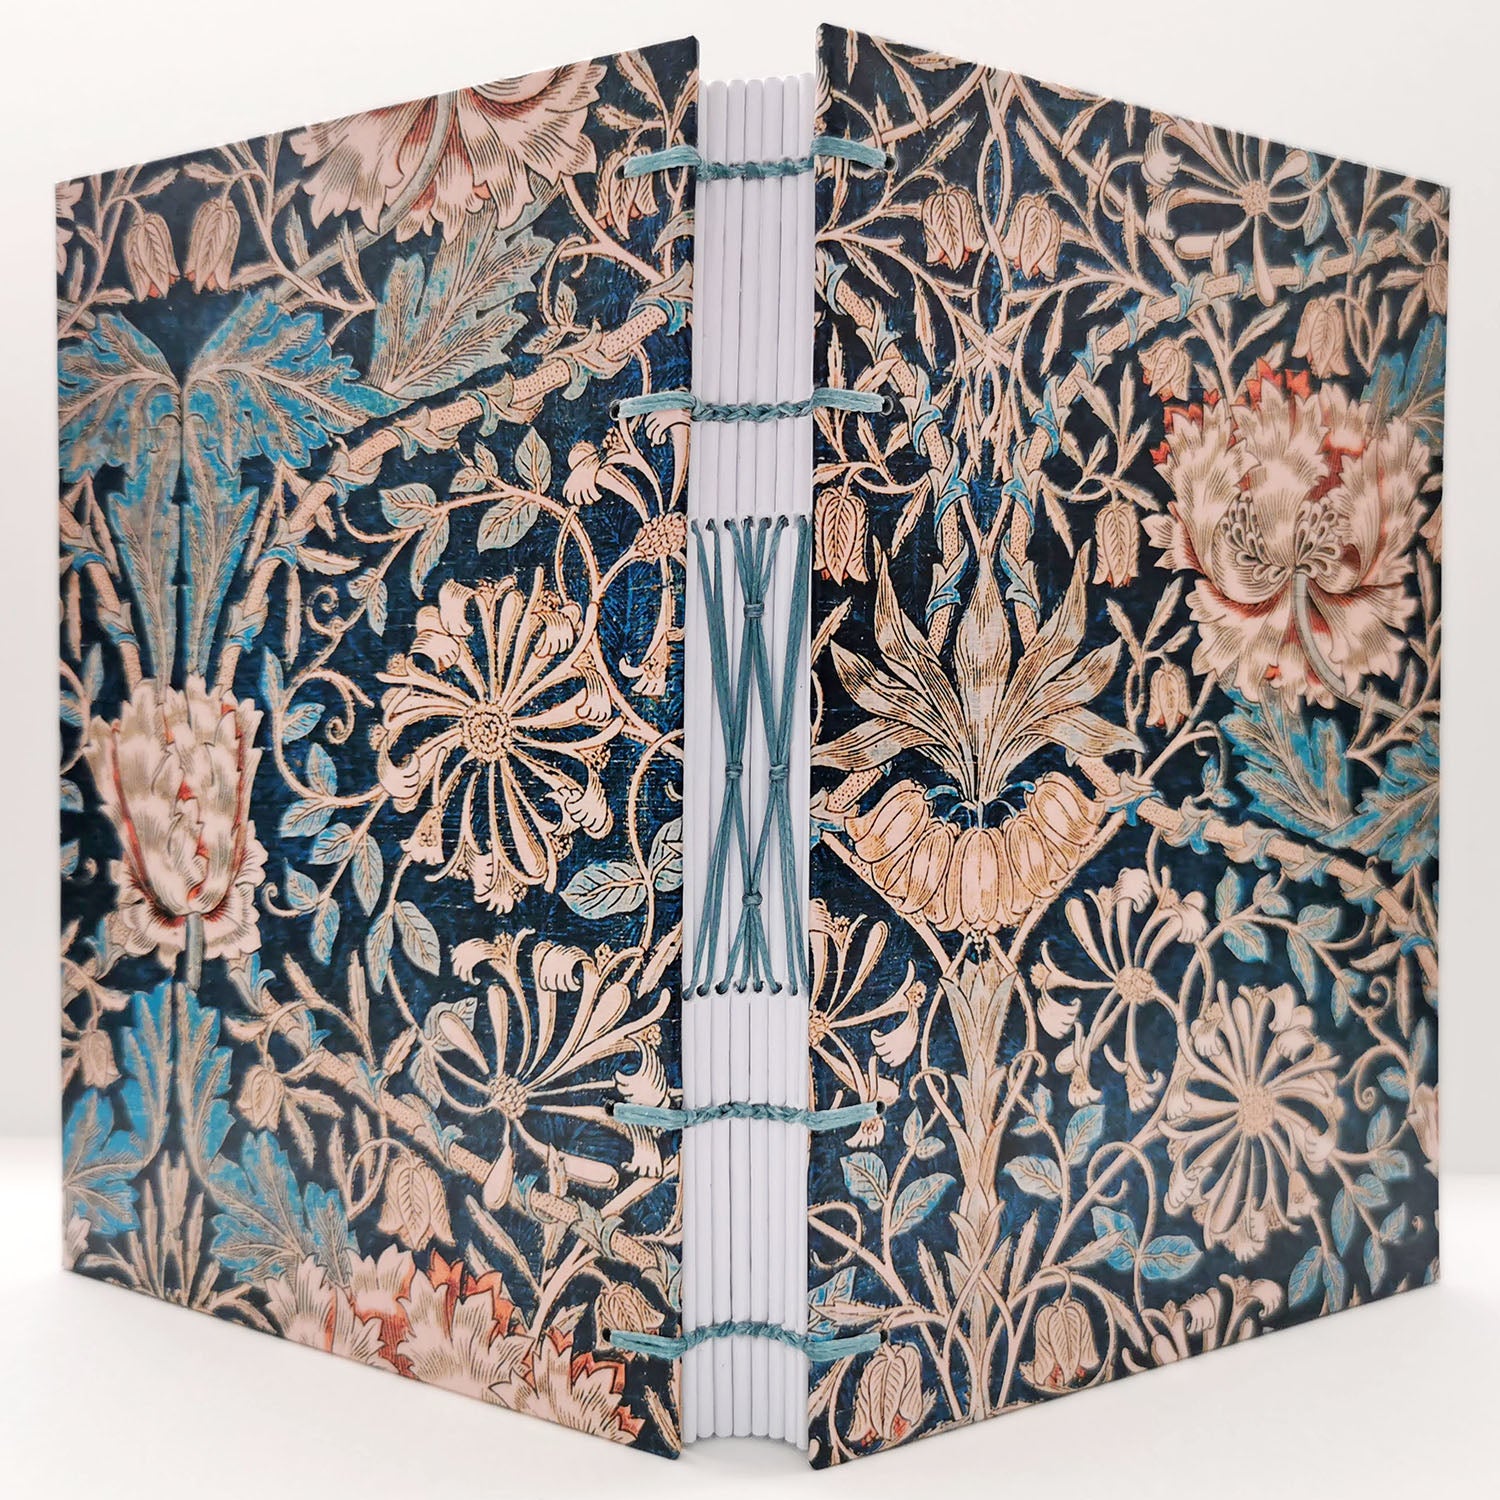 Χειροποίητo Σημειωματάριo με Βυζαντινή Βιβλιοδεσία - William Morris - Honeysuckle pattern